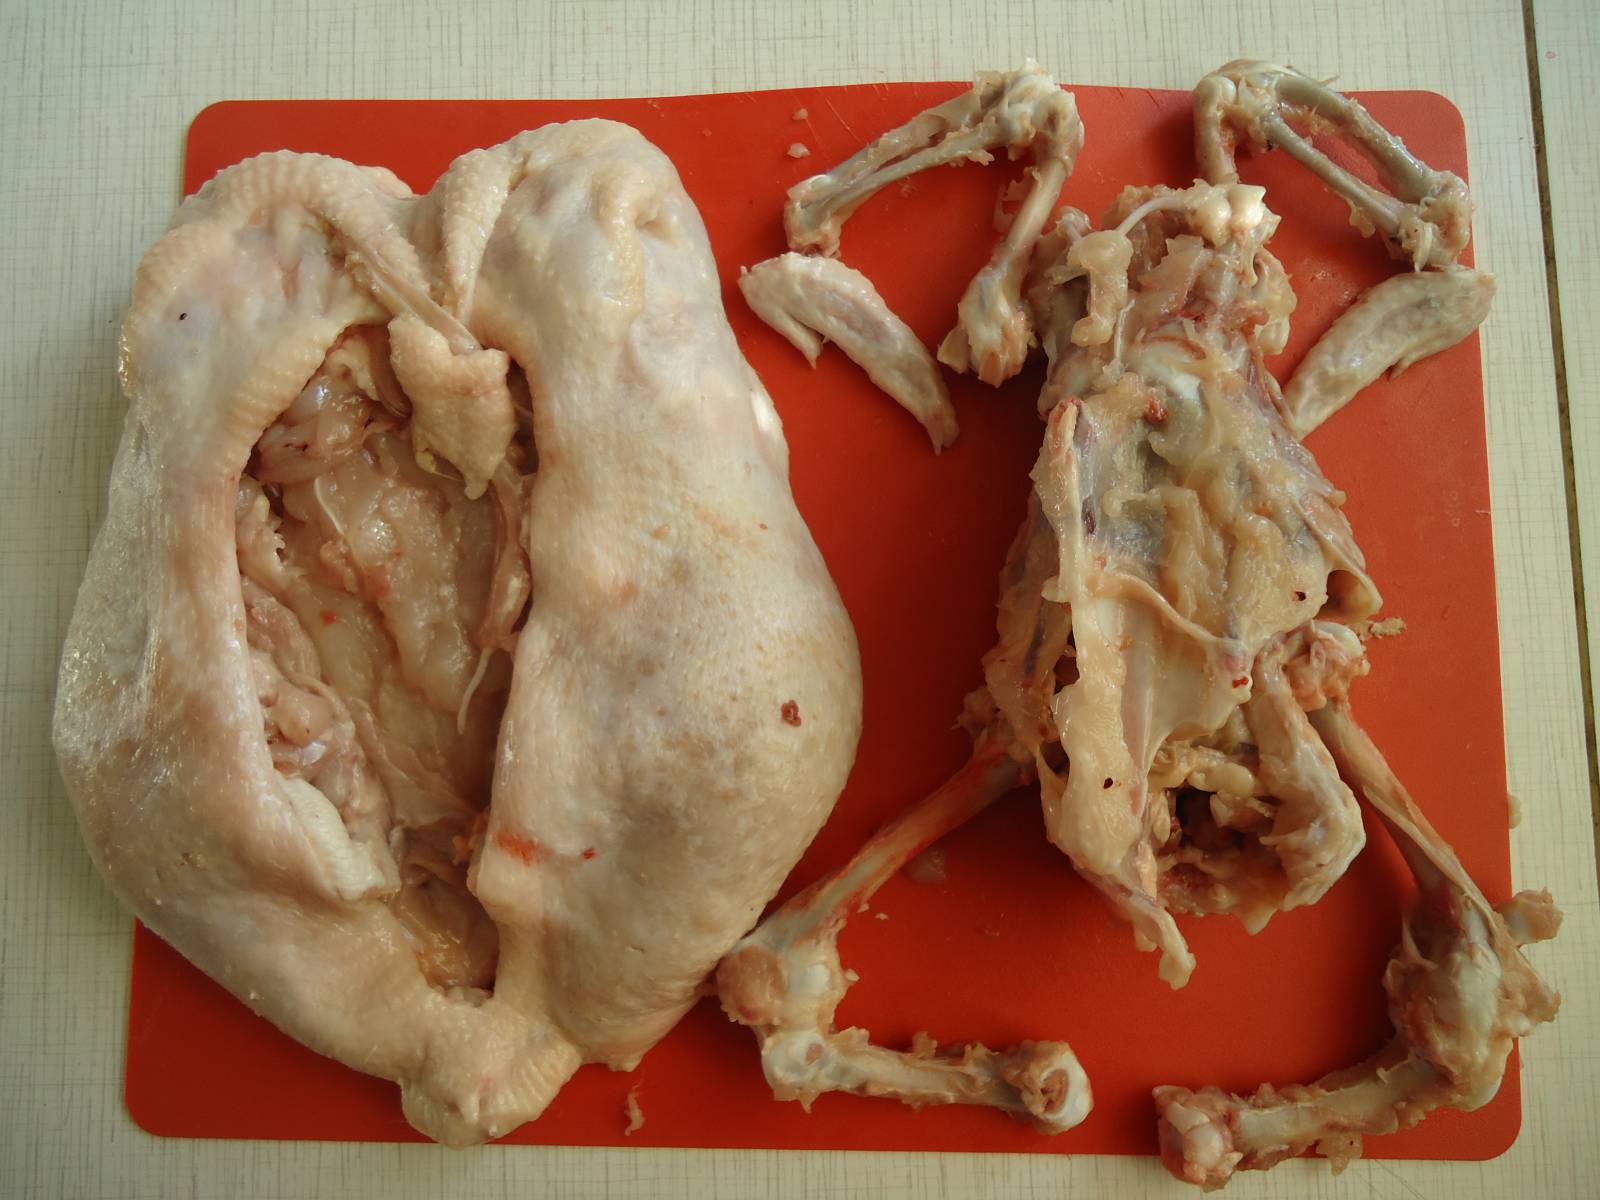 Nadziewany kurczak faszerowany chirurgicznie nostalgią (klasa mistrzowska)